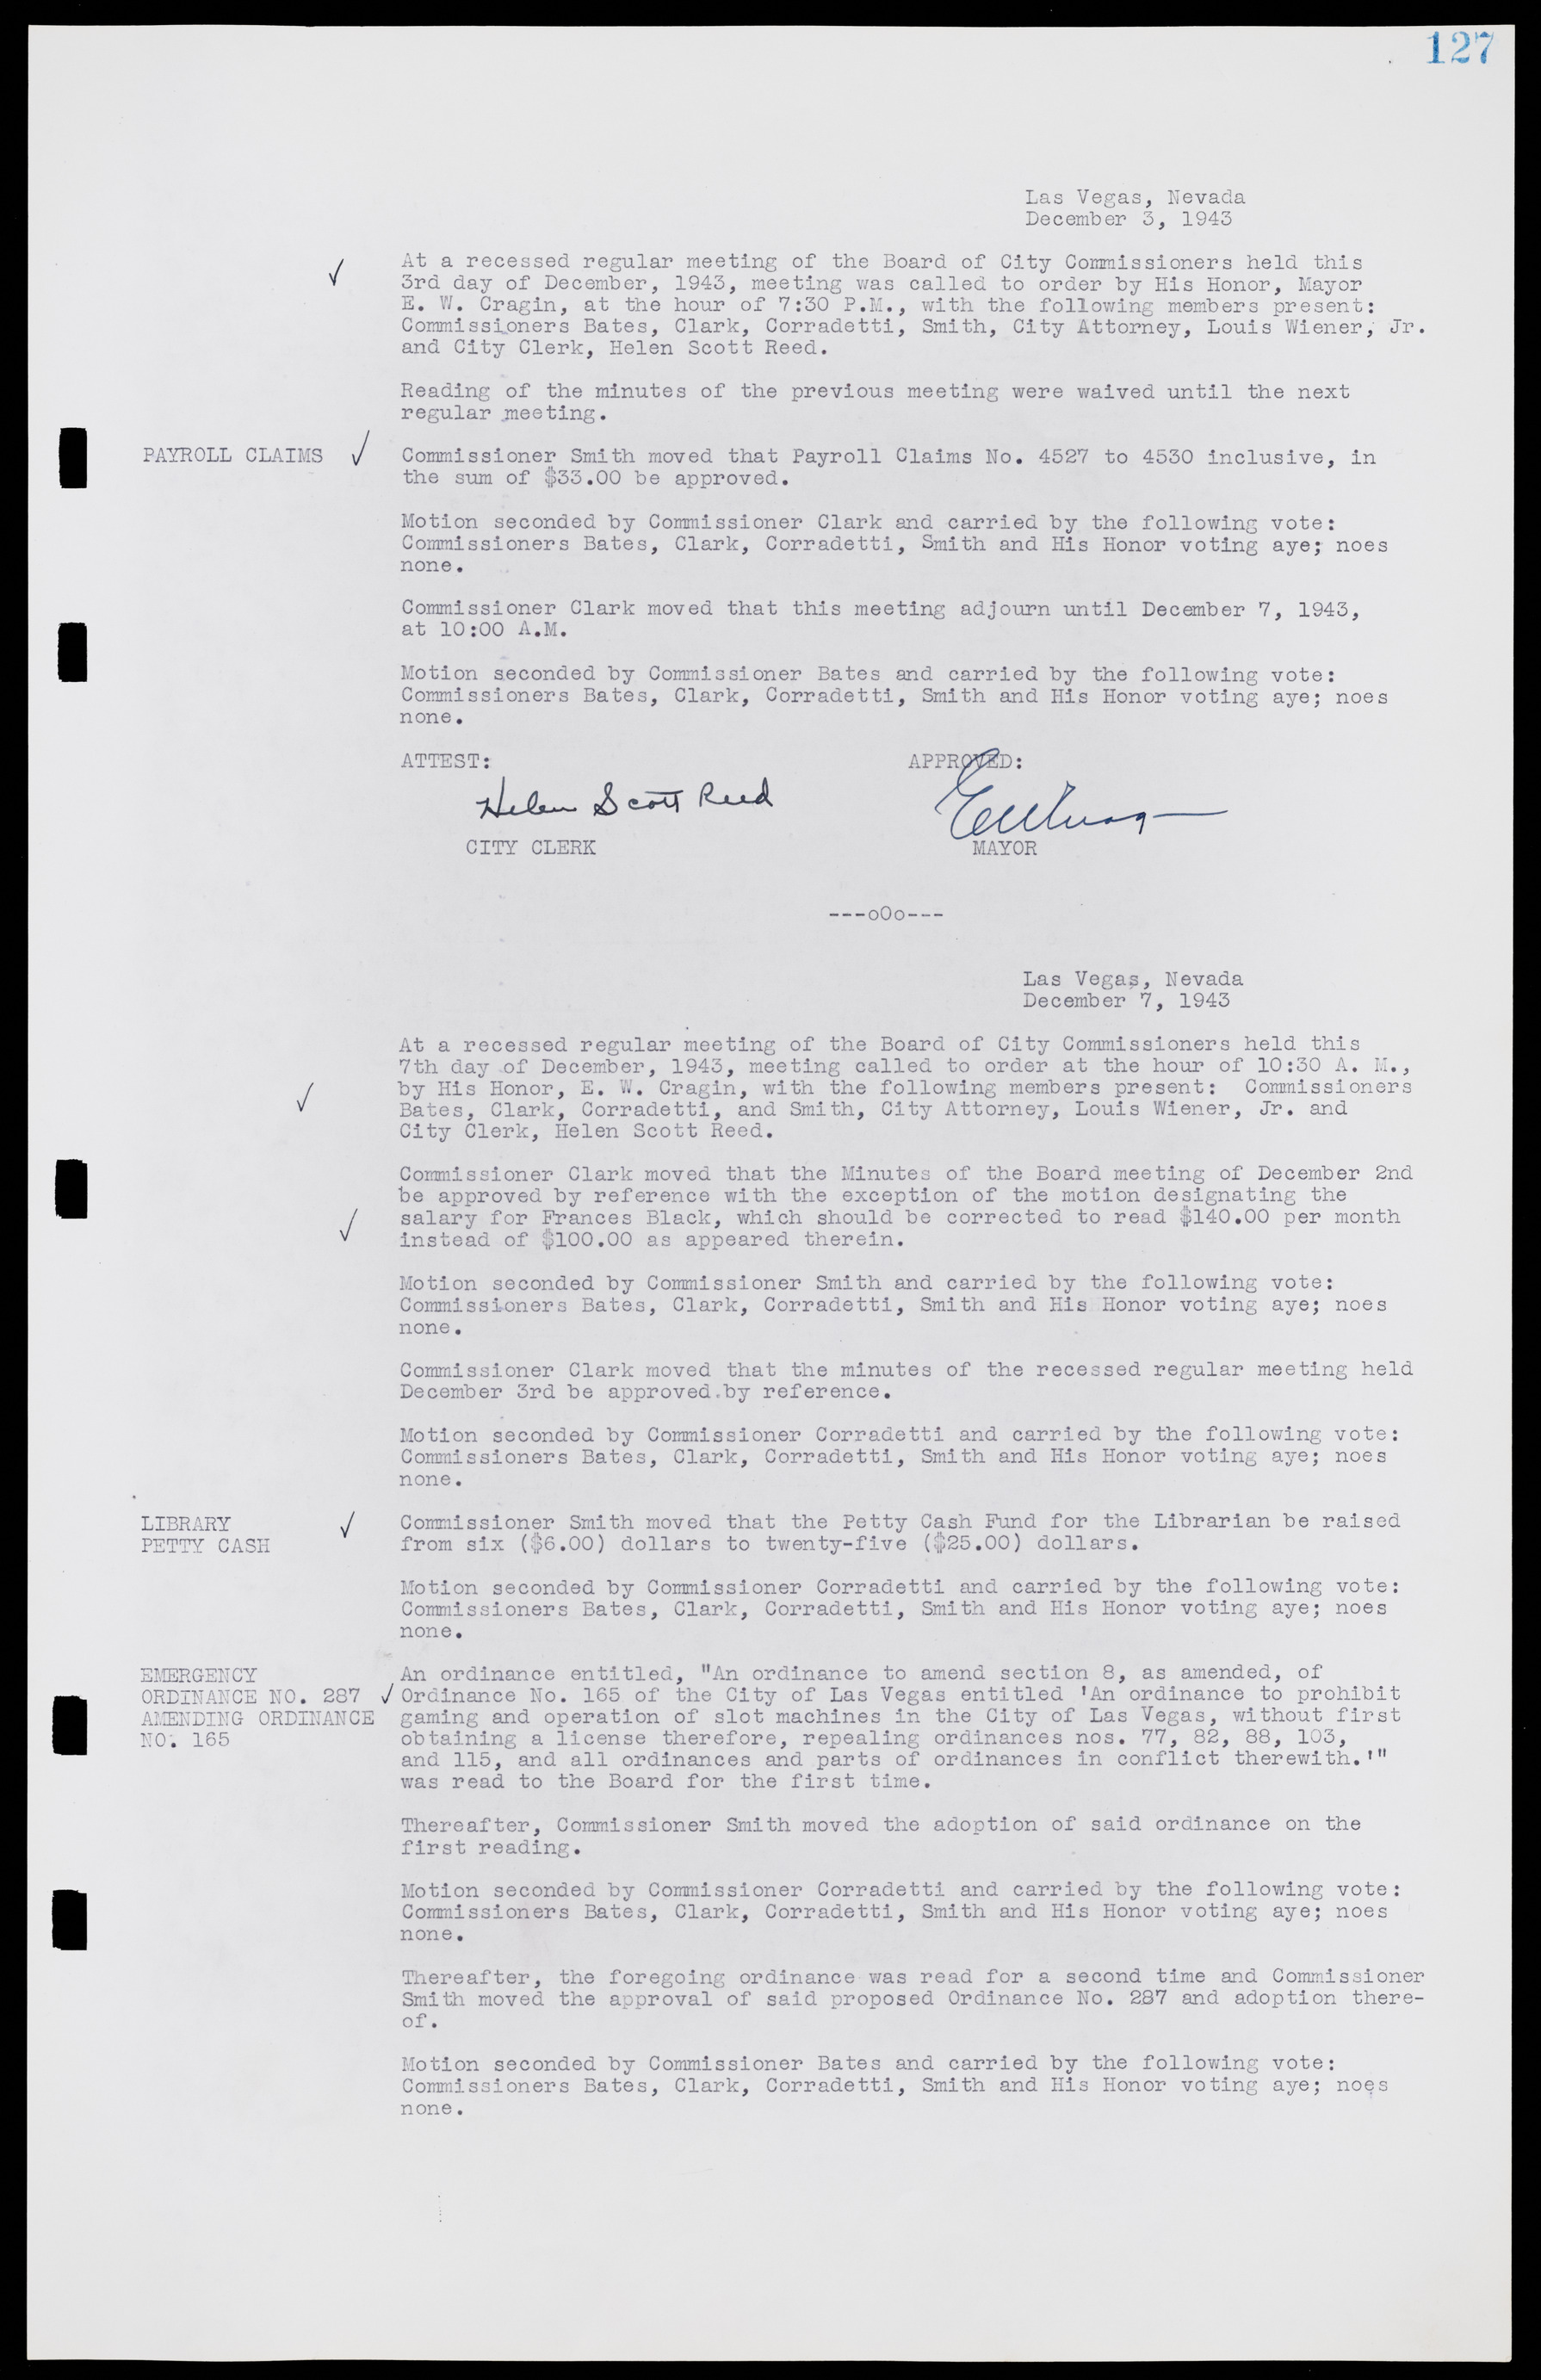 Las Vegas City Commission Minutes, August 11, 1942 to December 30, 1946, lvc000005-141